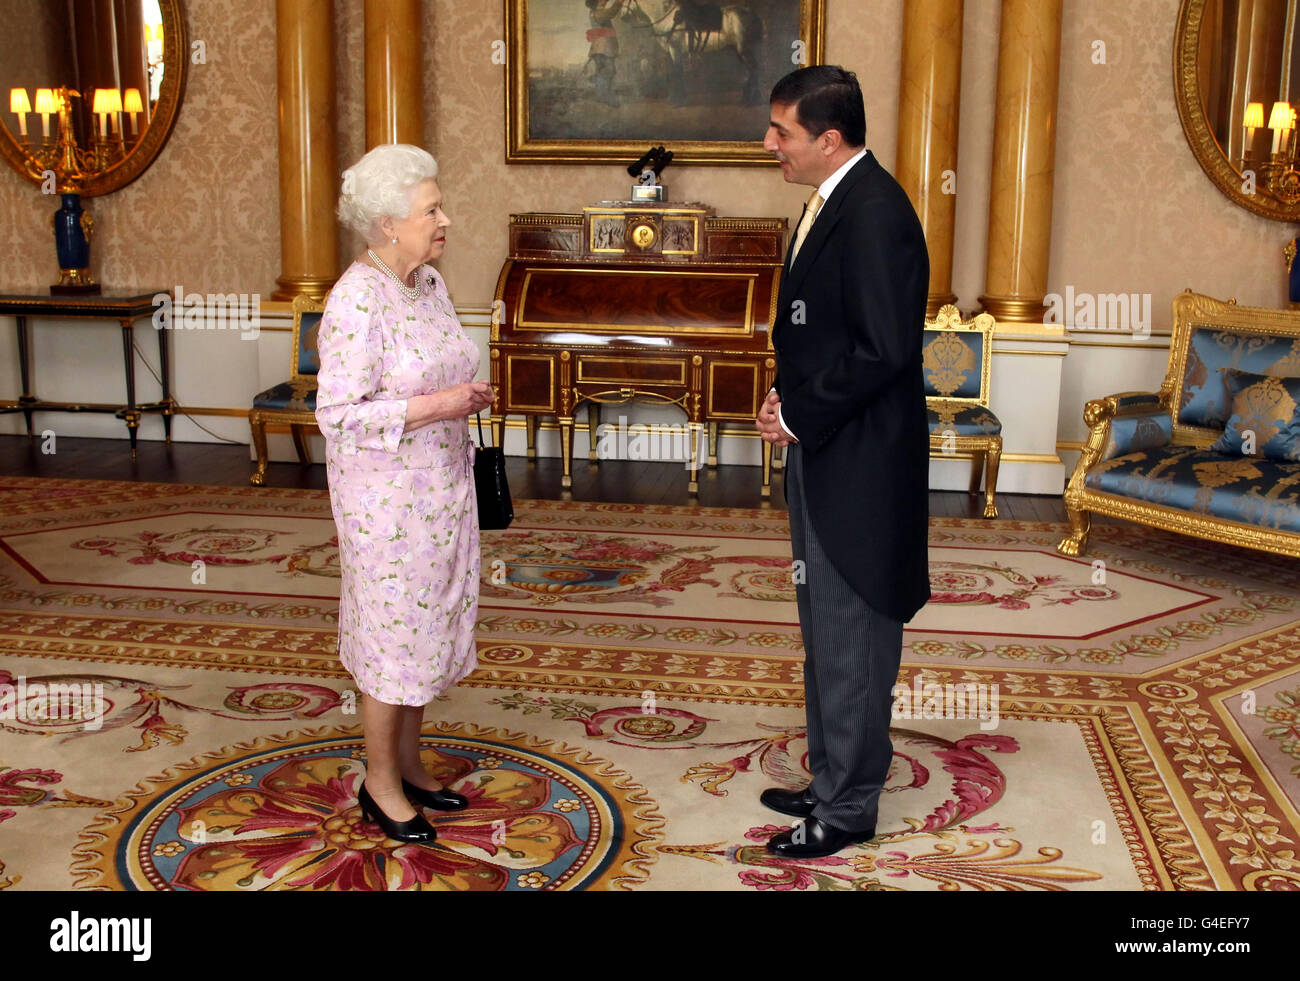 La reine Elizabeth II de Grande-Bretagne reçoit l'ambassadeur de Jordan Mazen Homoud lors d'un audience au Palais de Buckingham à Londres. Banque D'Images